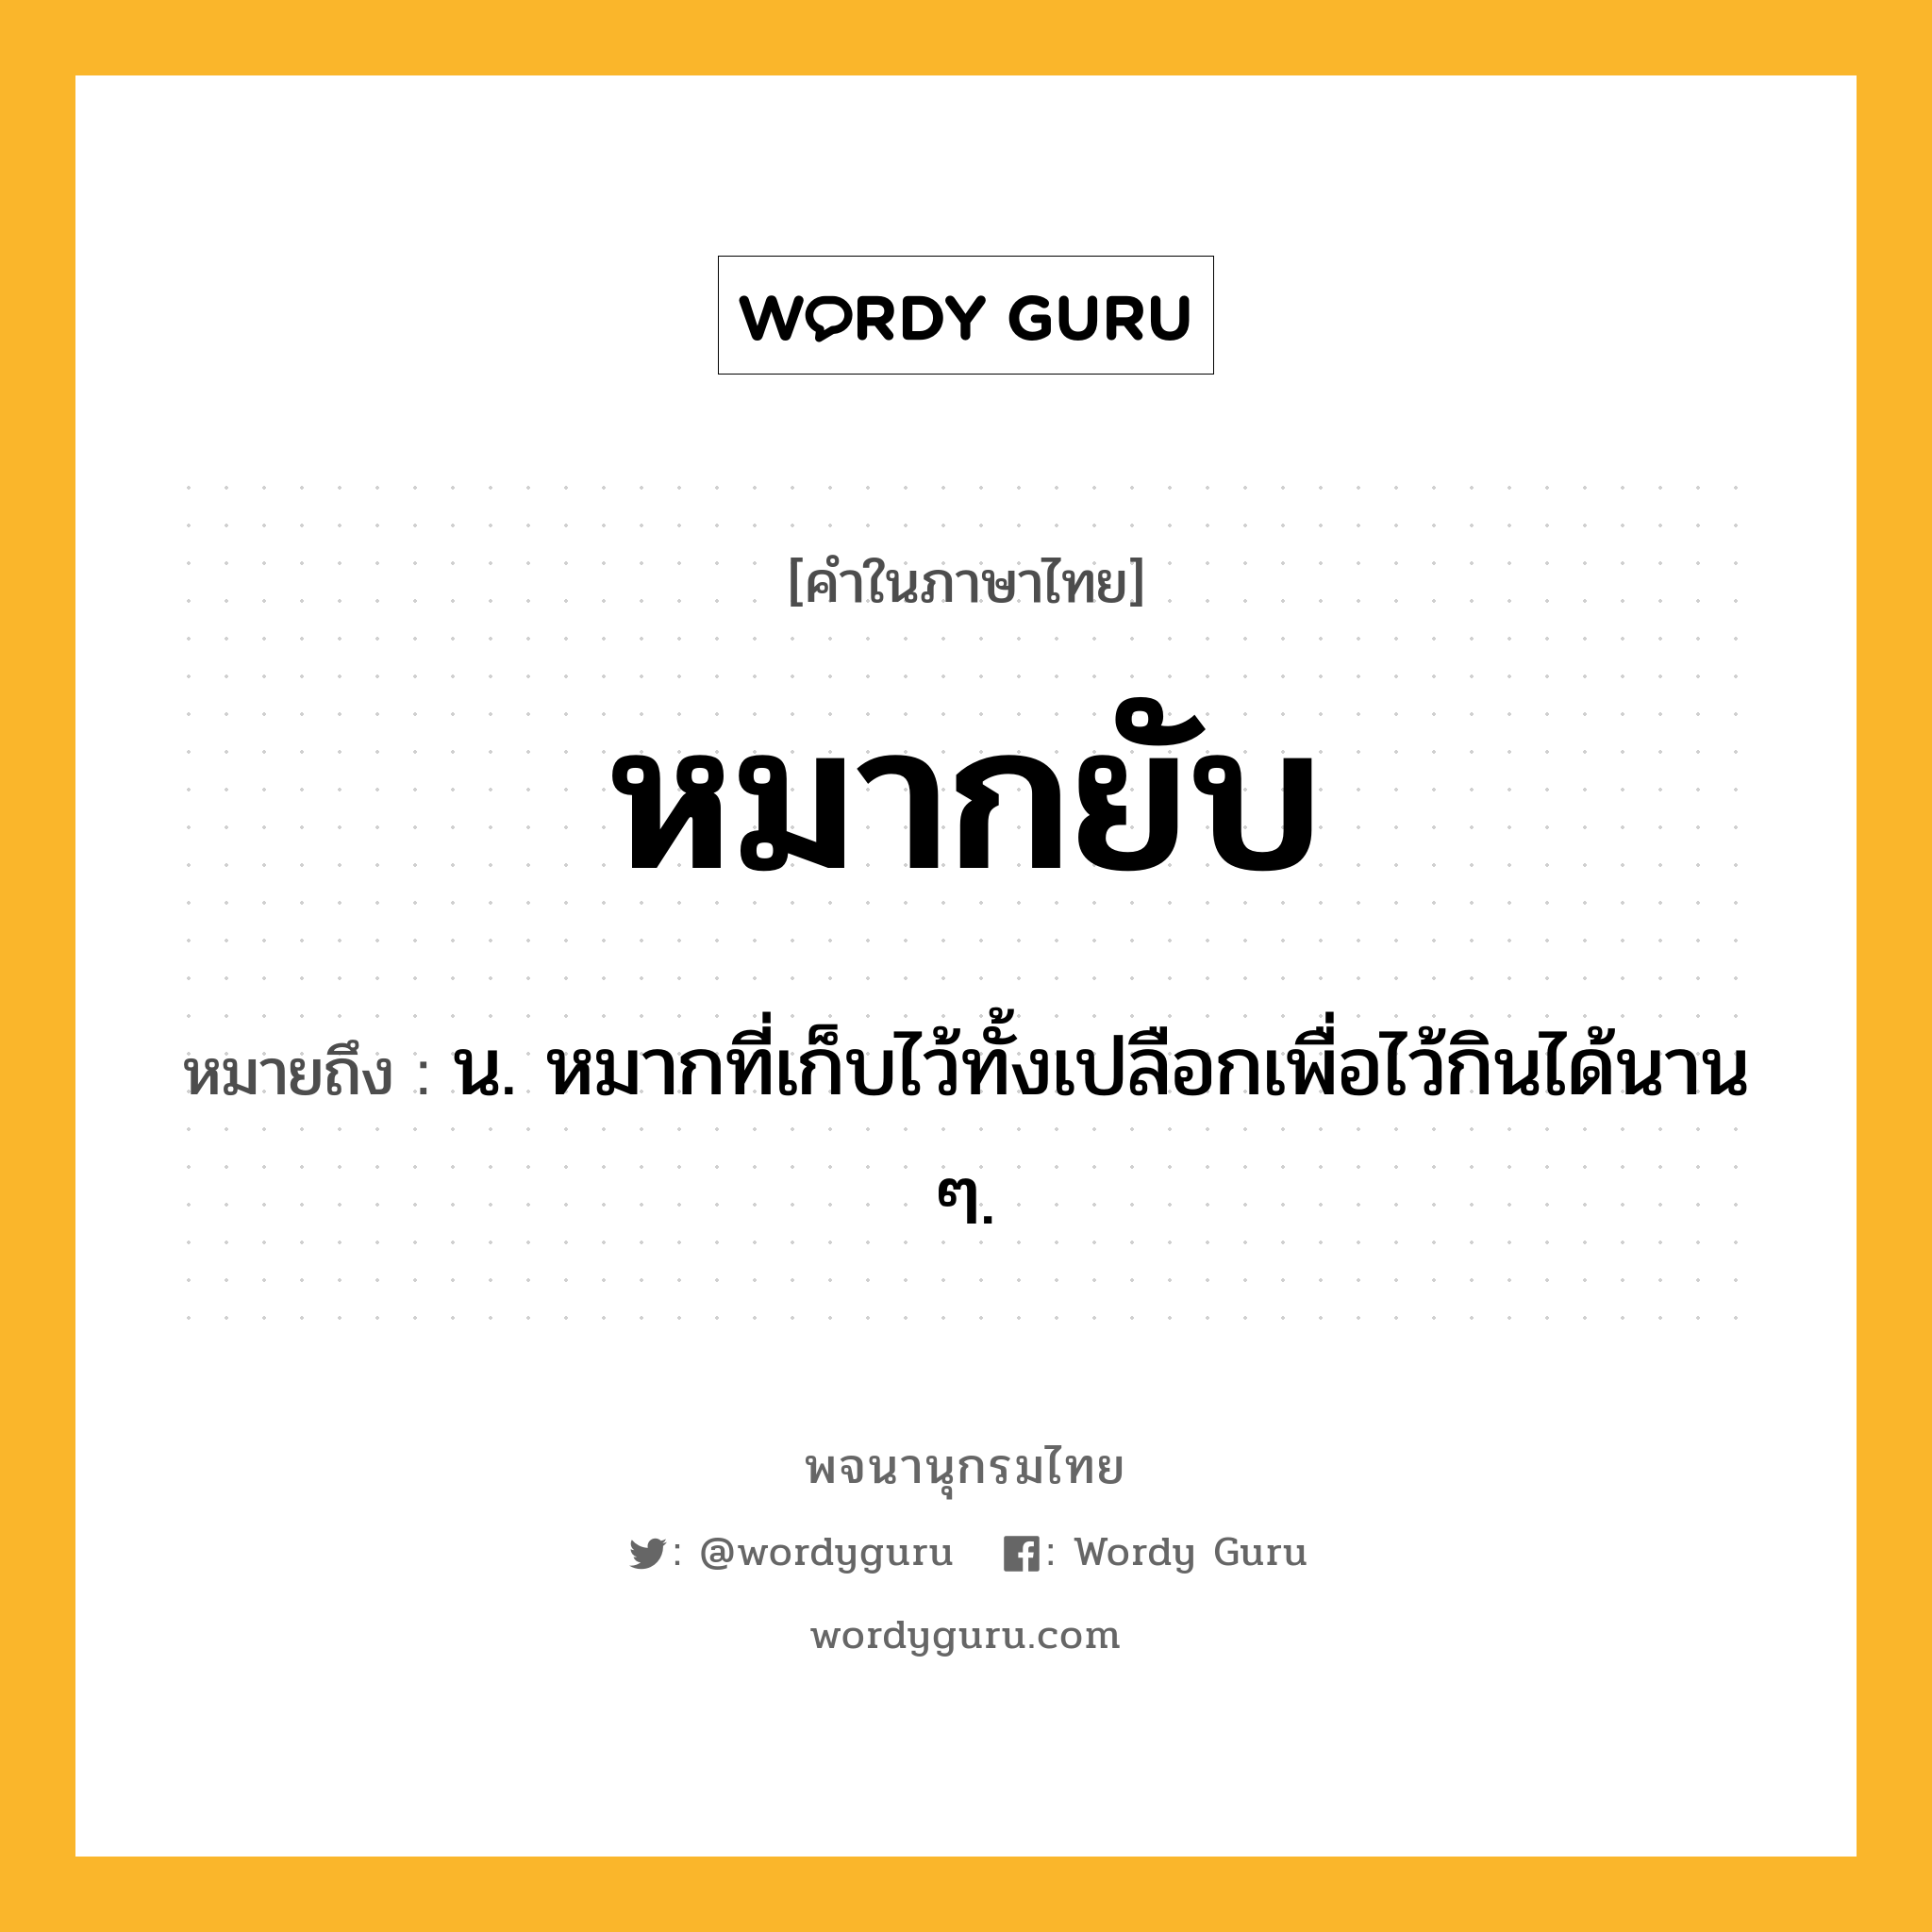 หมากยับ หมายถึงอะไร?, คำในภาษาไทย หมากยับ หมายถึง น. หมากที่เก็บไว้ทั้งเปลือกเพื่อไว้กินได้นาน ๆ.